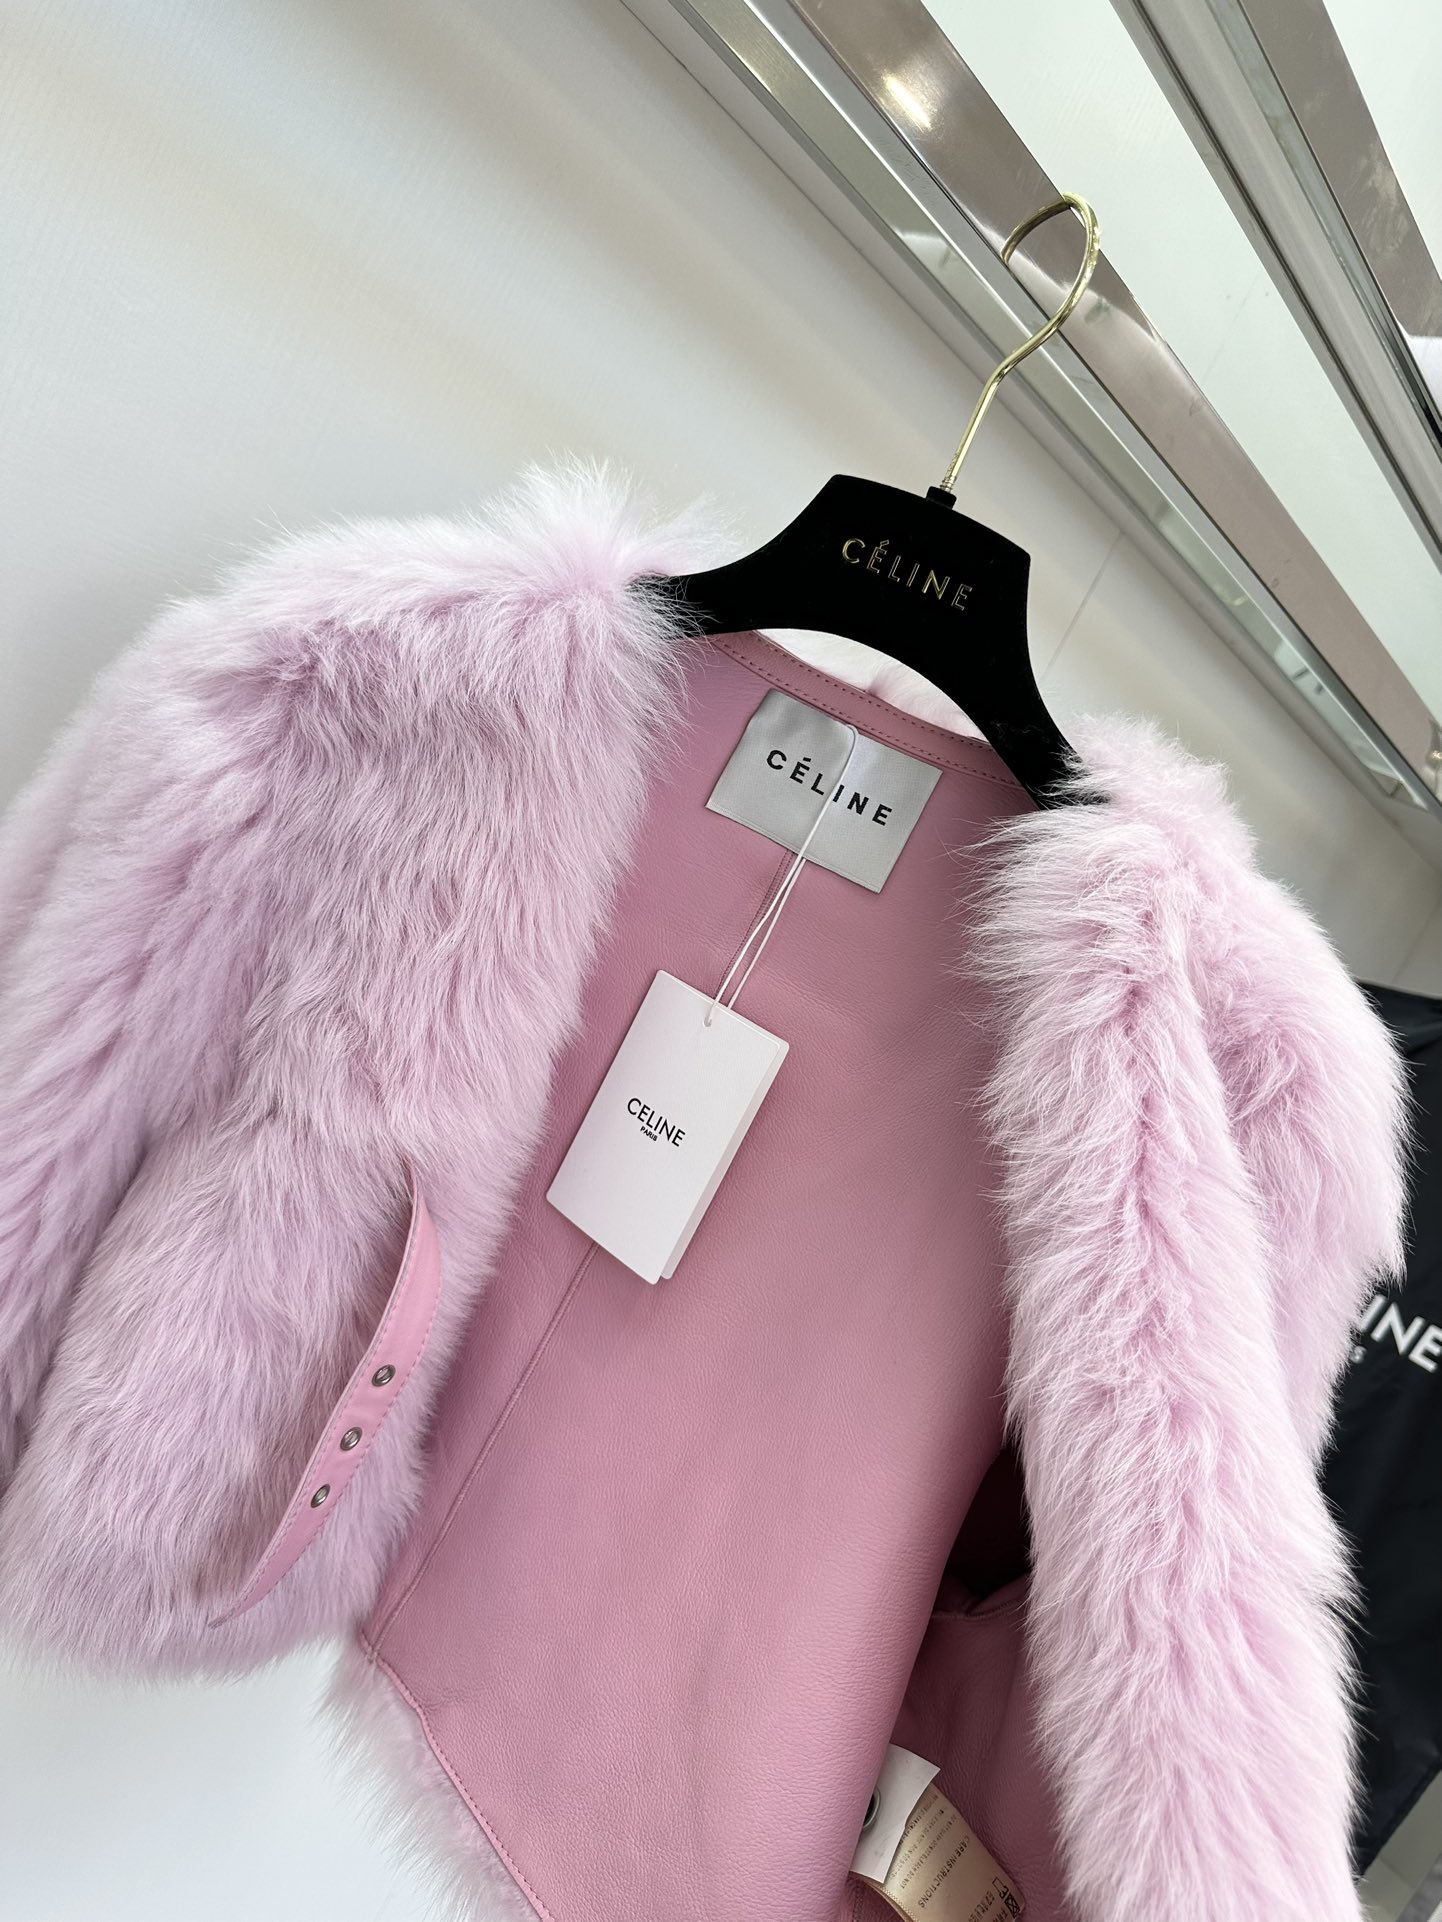 セリーヌ ジャンパー偽物 鮮やかな色 イタリア製 高級品 もこもこ 暖かい ファッション レディース 3色可選 ピンク_8